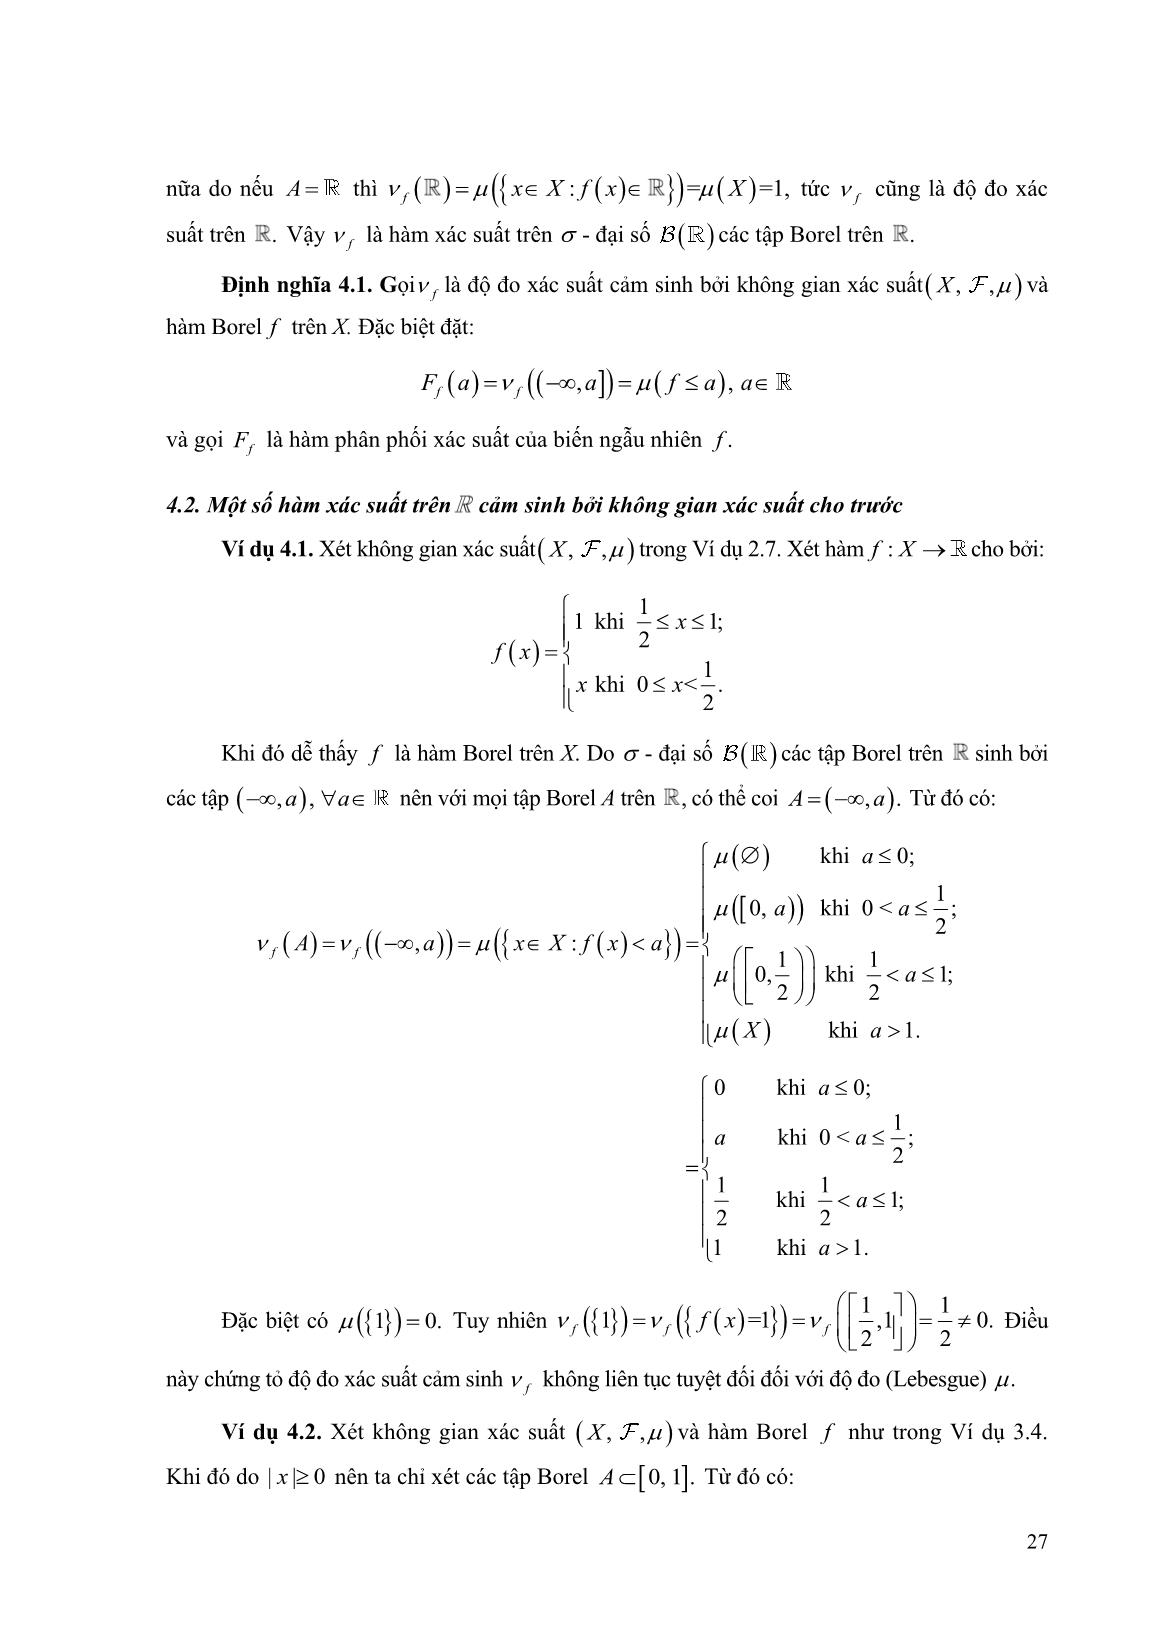 Một số không gian xác suất trên R trang 6